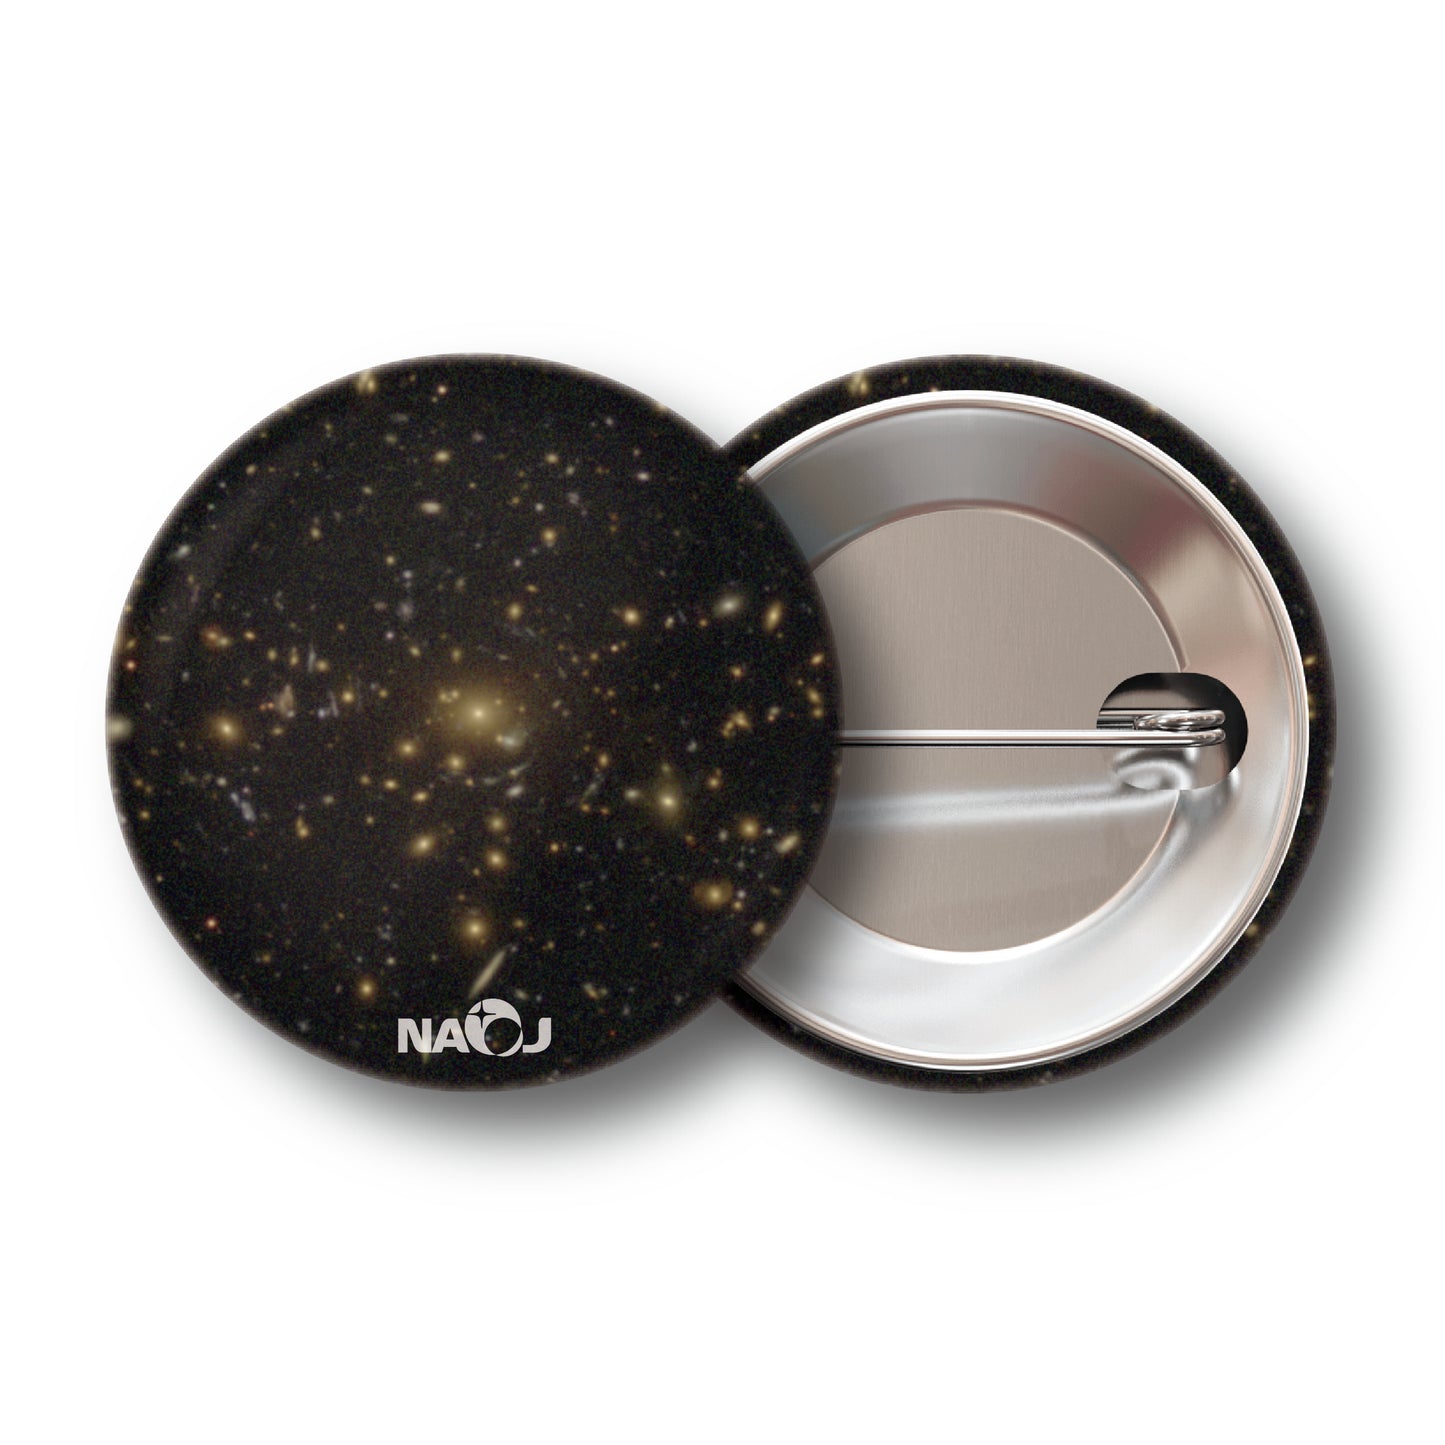 国立天文台  すばる望遠鏡HSCで見る宇宙  缶バッジ [小] 重力レンズ NVSSJ142016+005718 00